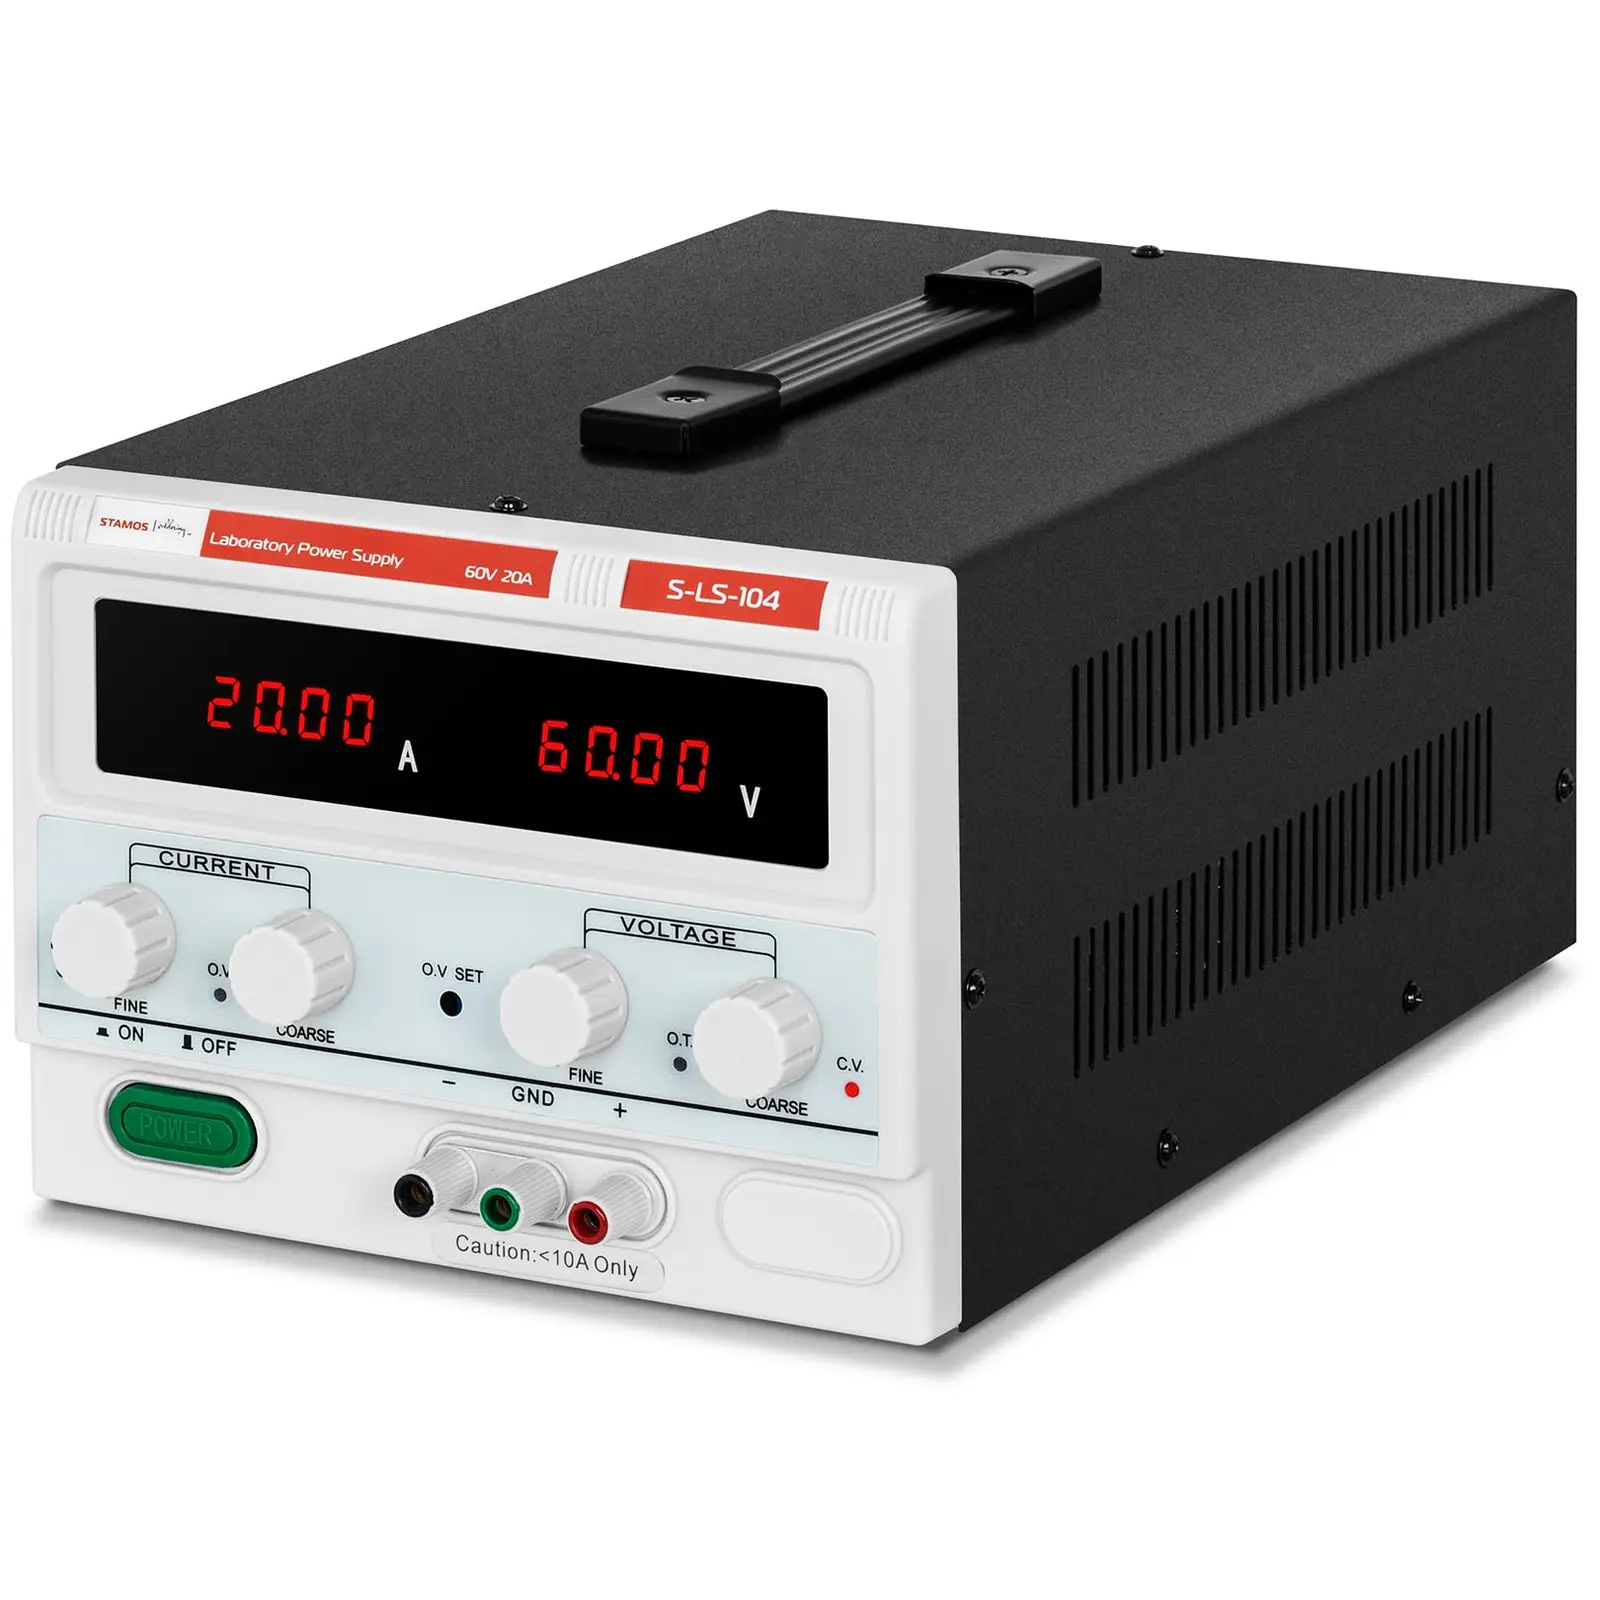 B-varer Strømforsyning laboratorie - 0 - 60 V - 0 - 20 A DC - 1,200 W - firesifret LED display